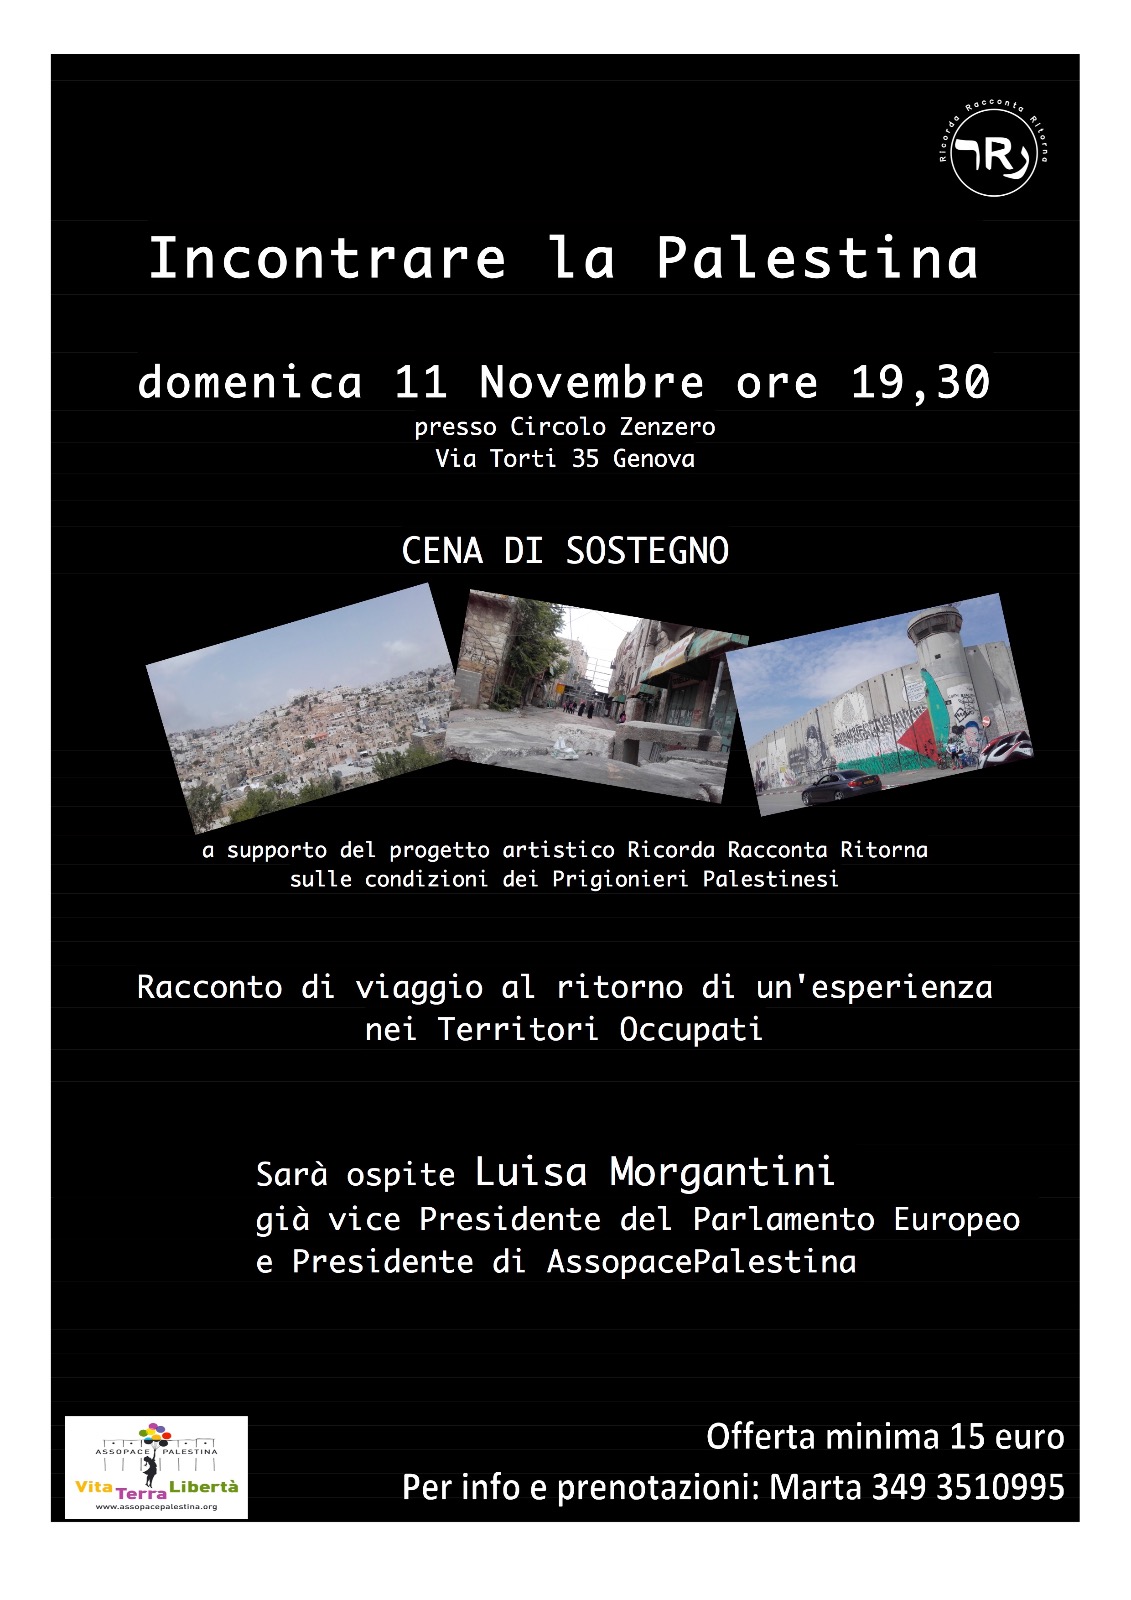 Genova, 11 novembre: Cena di sostegno “Incontrare la Palestina”.